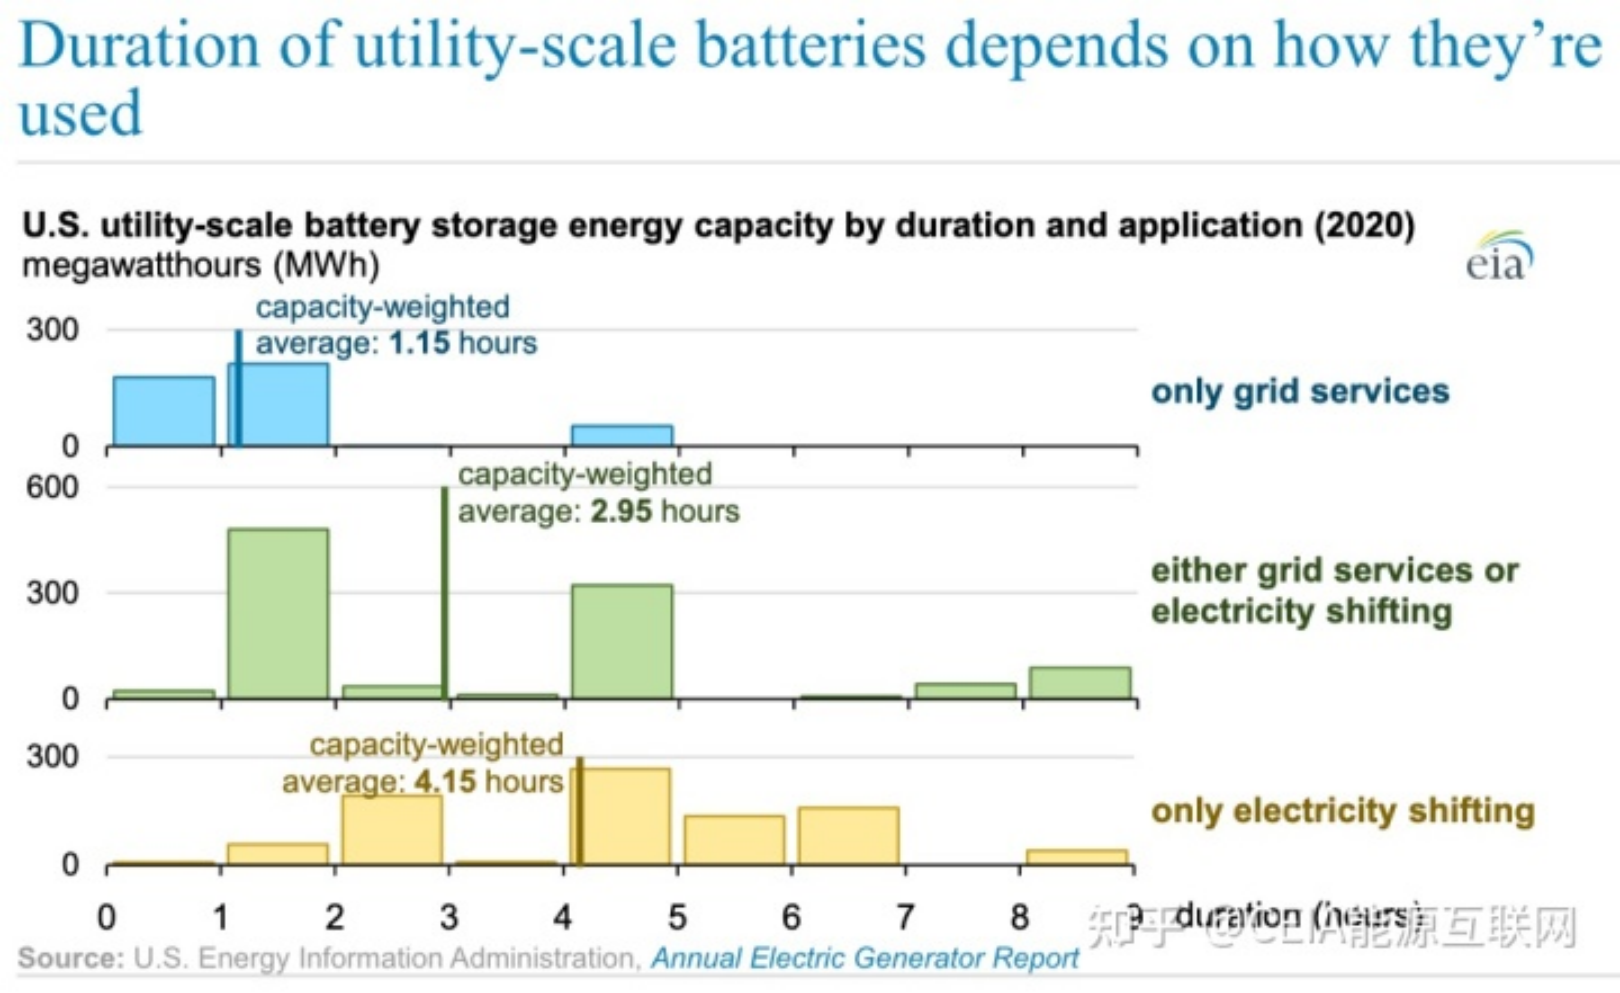 ¿Cuáles son los usos de las baterías de almacenamiento de energía a gran escala de EE. UU.?